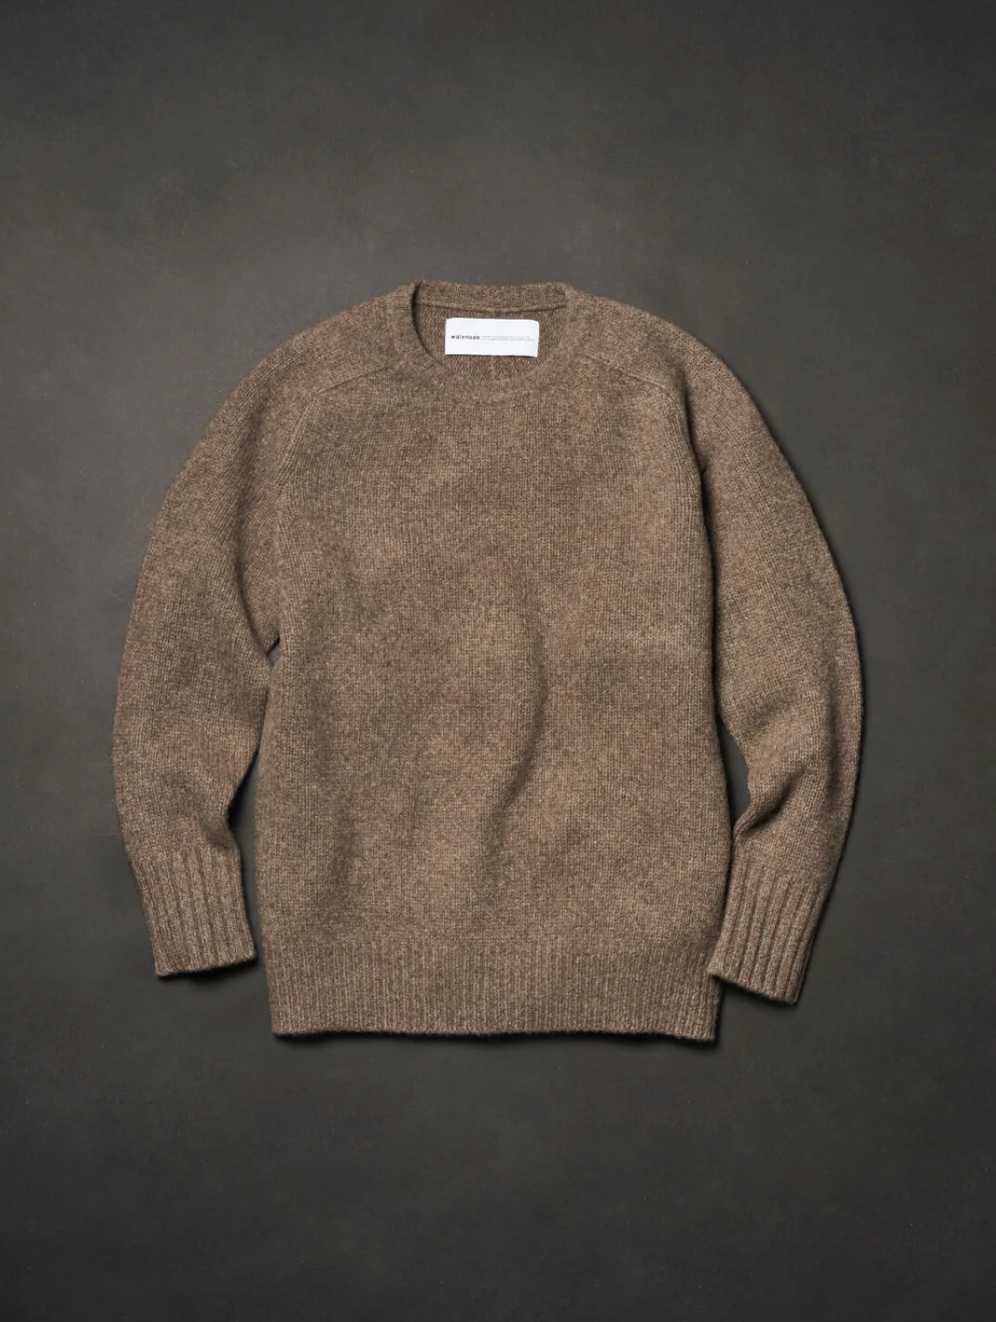 YAK Shetland sweater